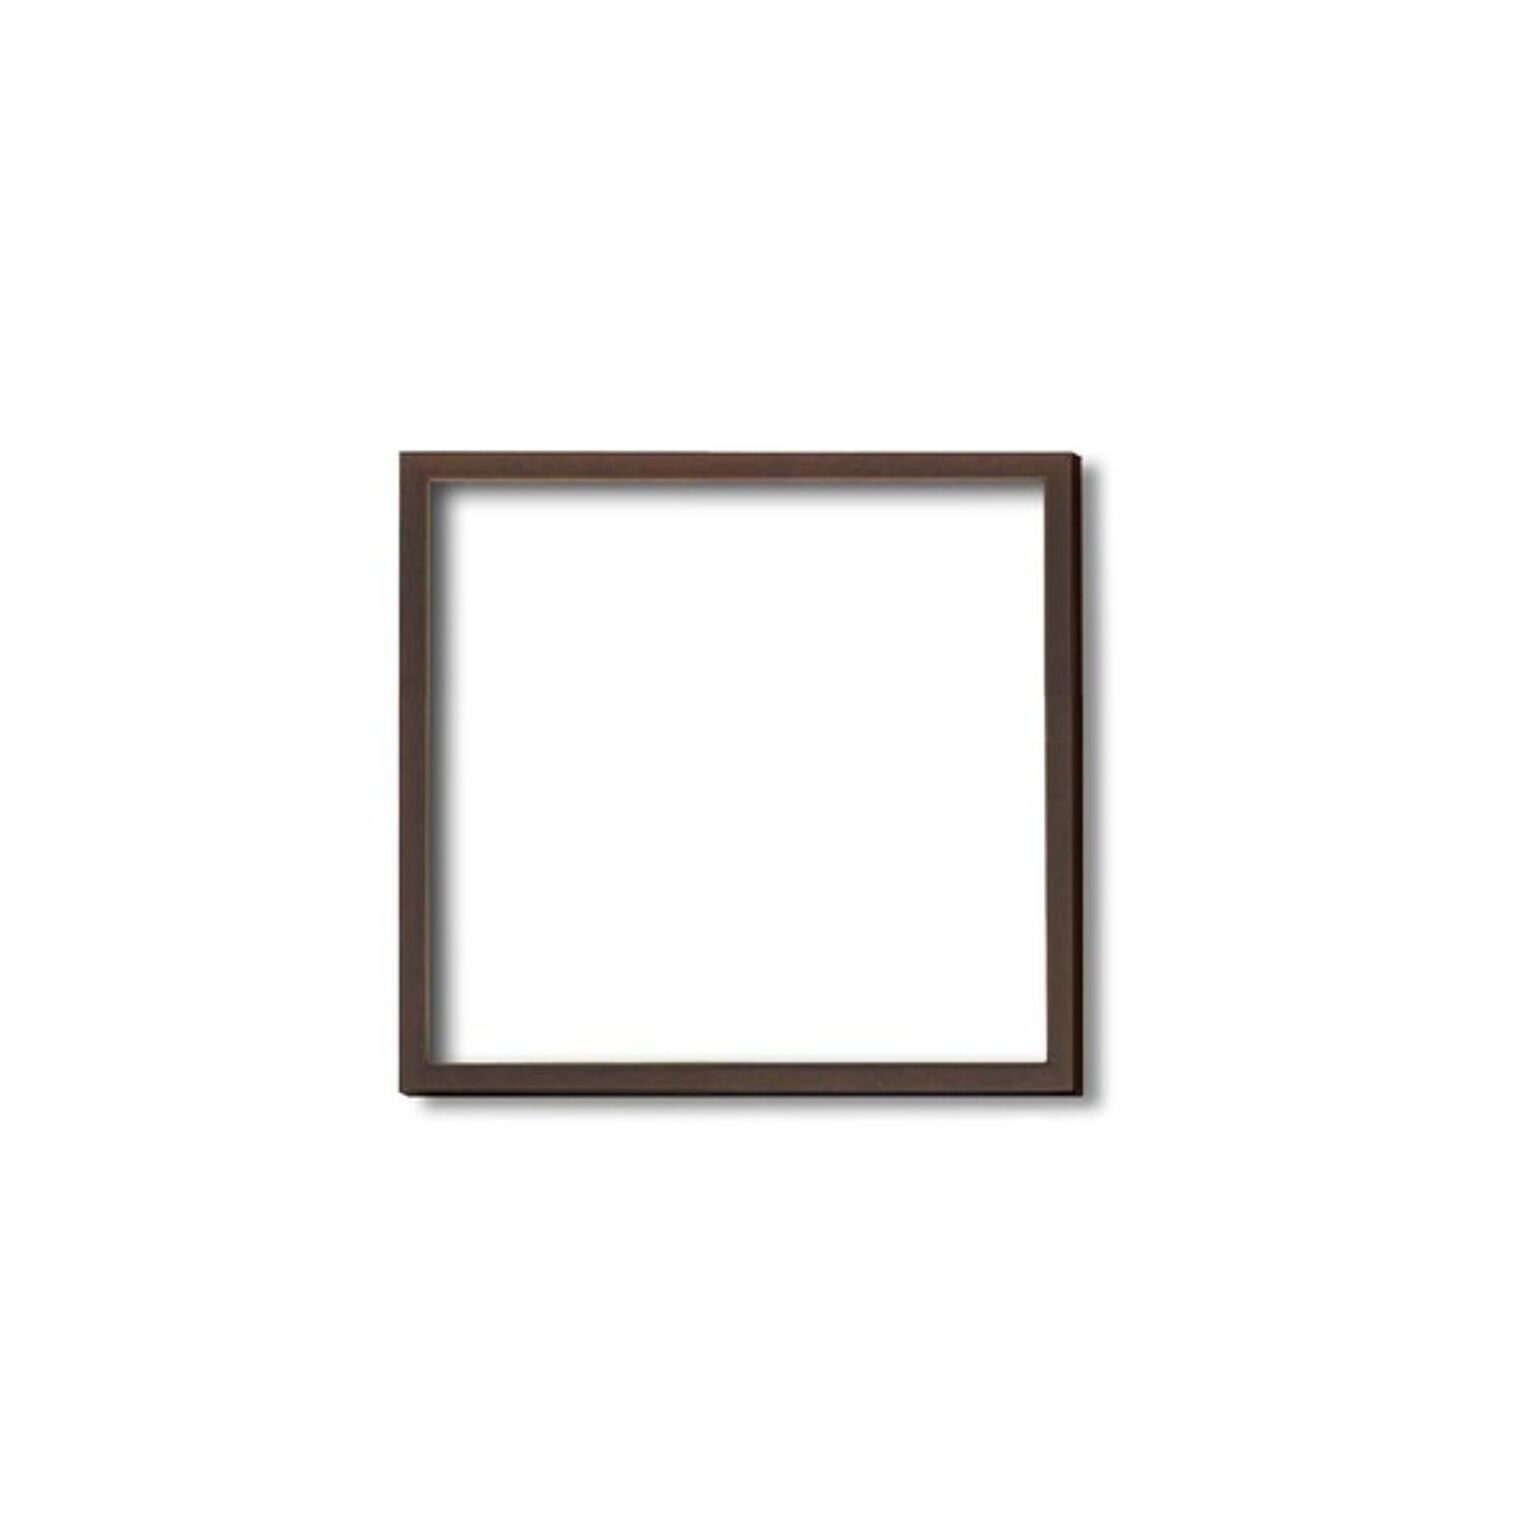 【角額】木製正方額・壁掛けひも■5767 200角(200×200mm)「ブラウン」